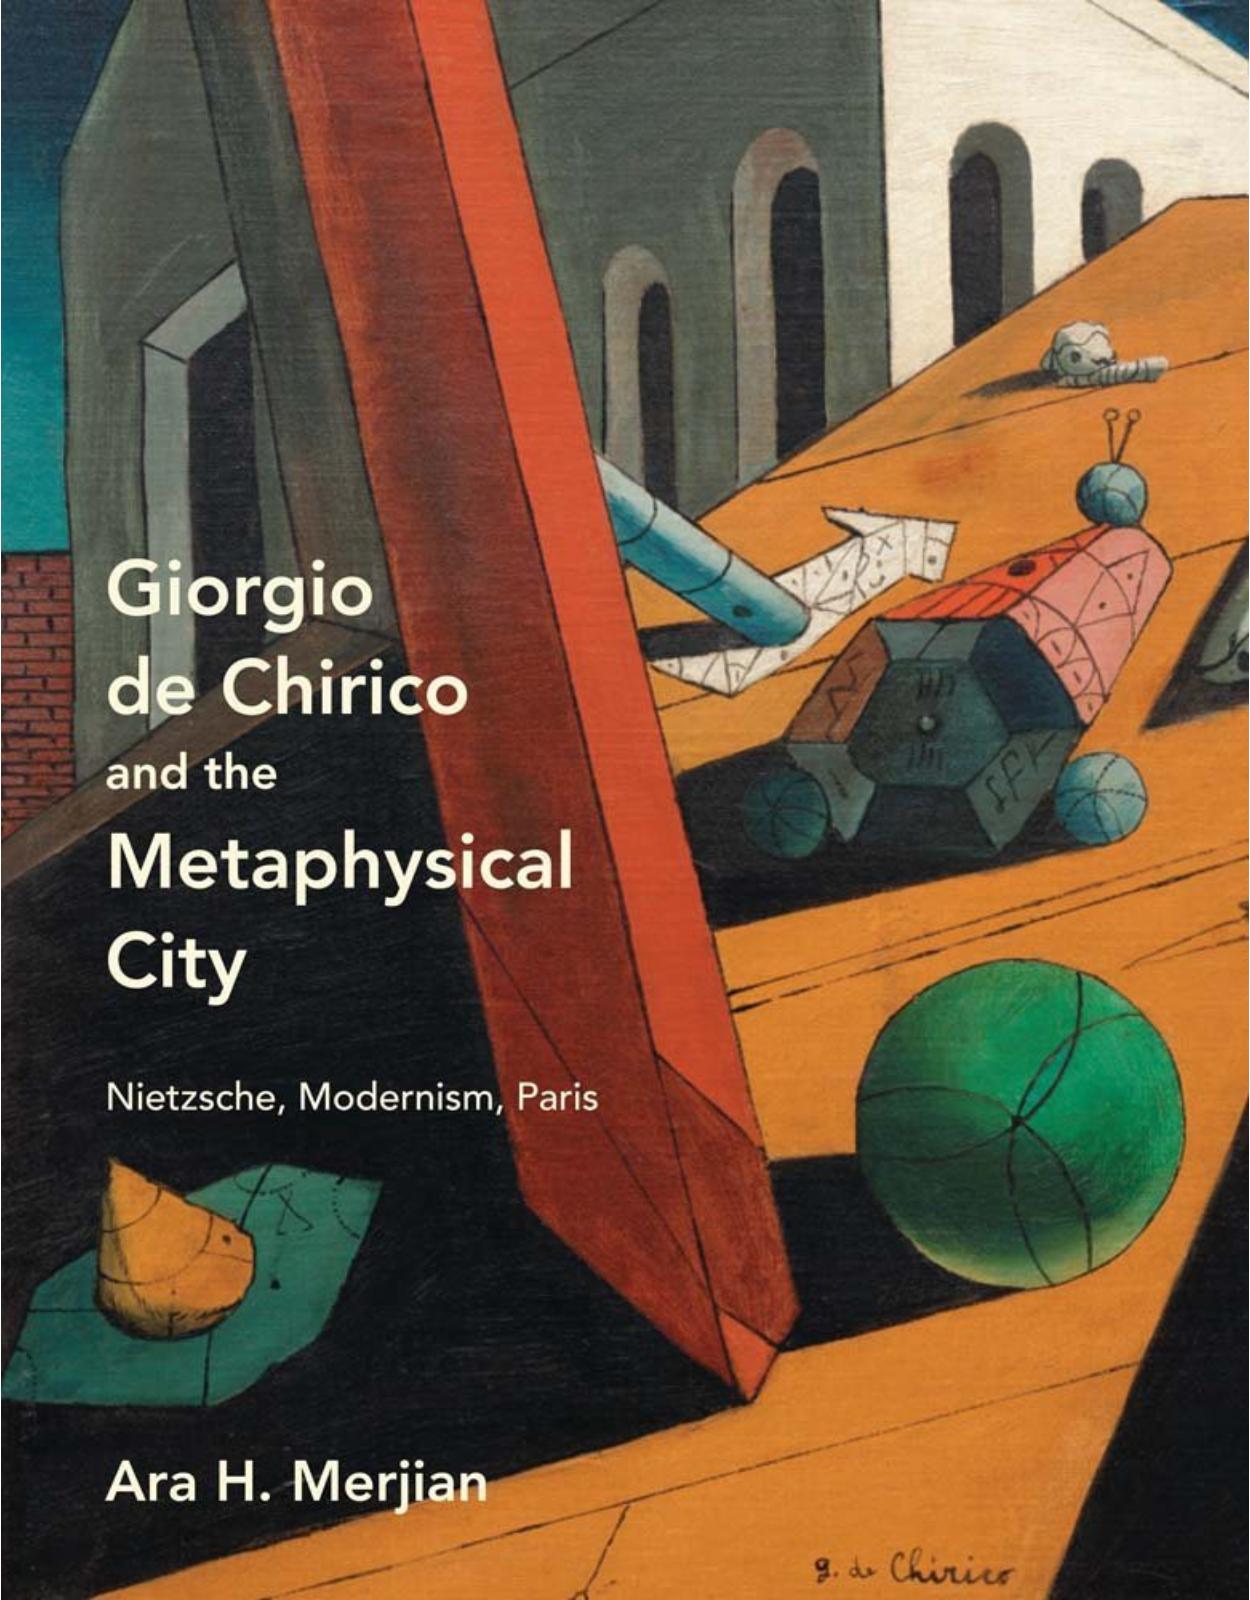 Giorgio de Chirico and the Metaphysical City.